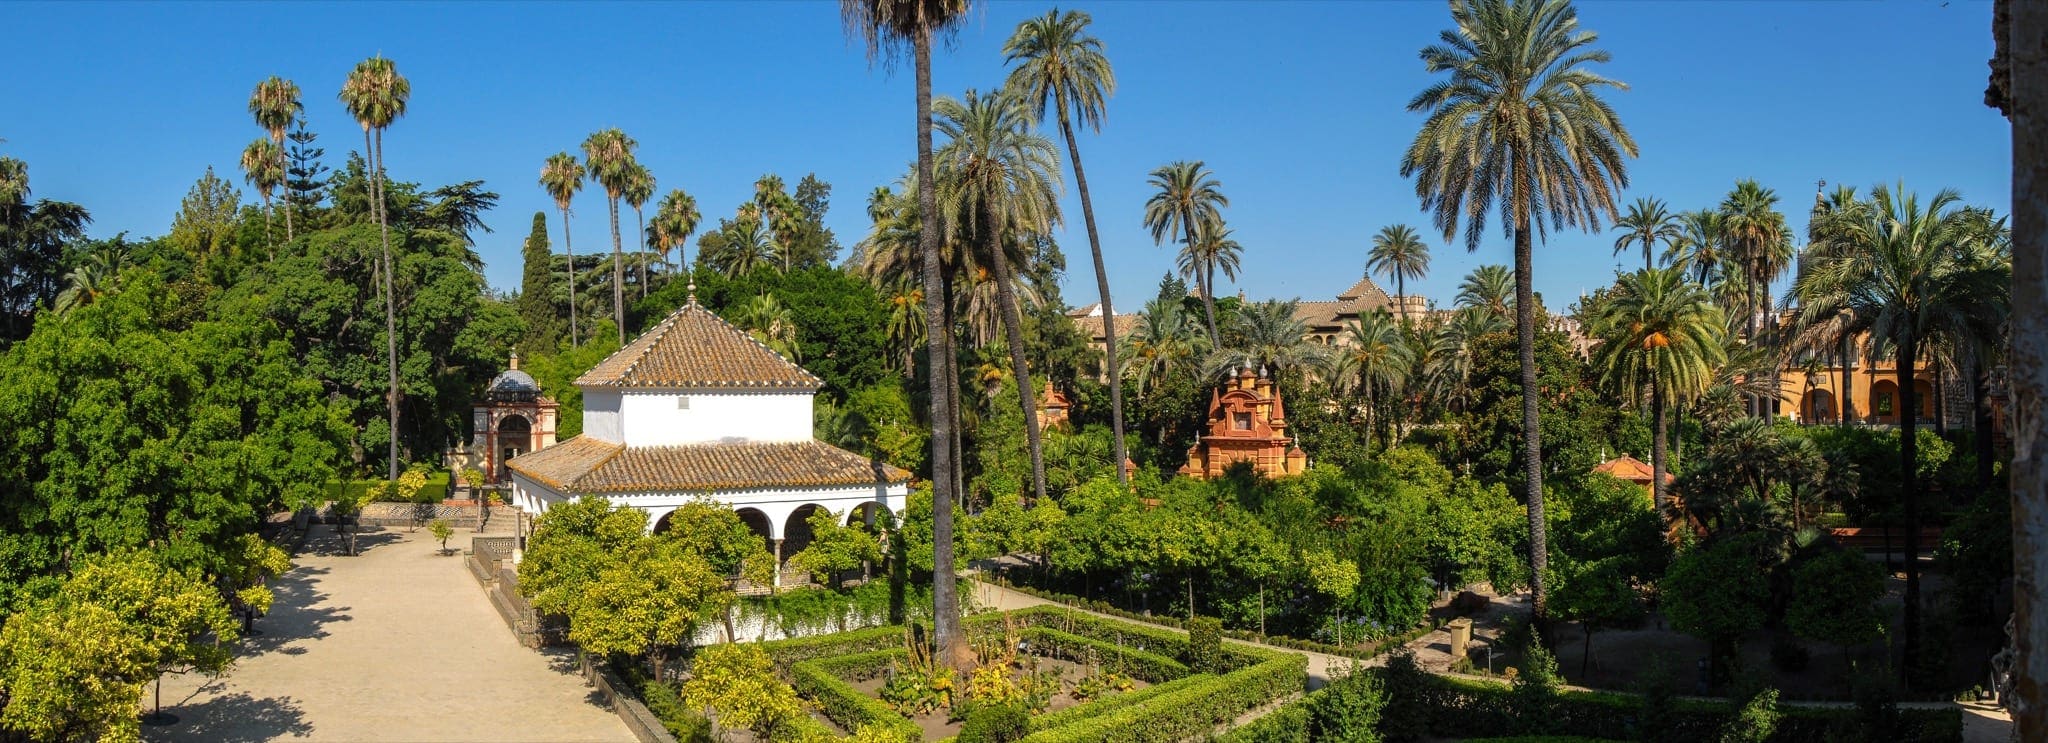 Sevilla Alcazar 03 copy - Palatul Alcázar din Sevilla, vedeta din „Game of Thrones” și filmul „Lawrence al Arabiei”